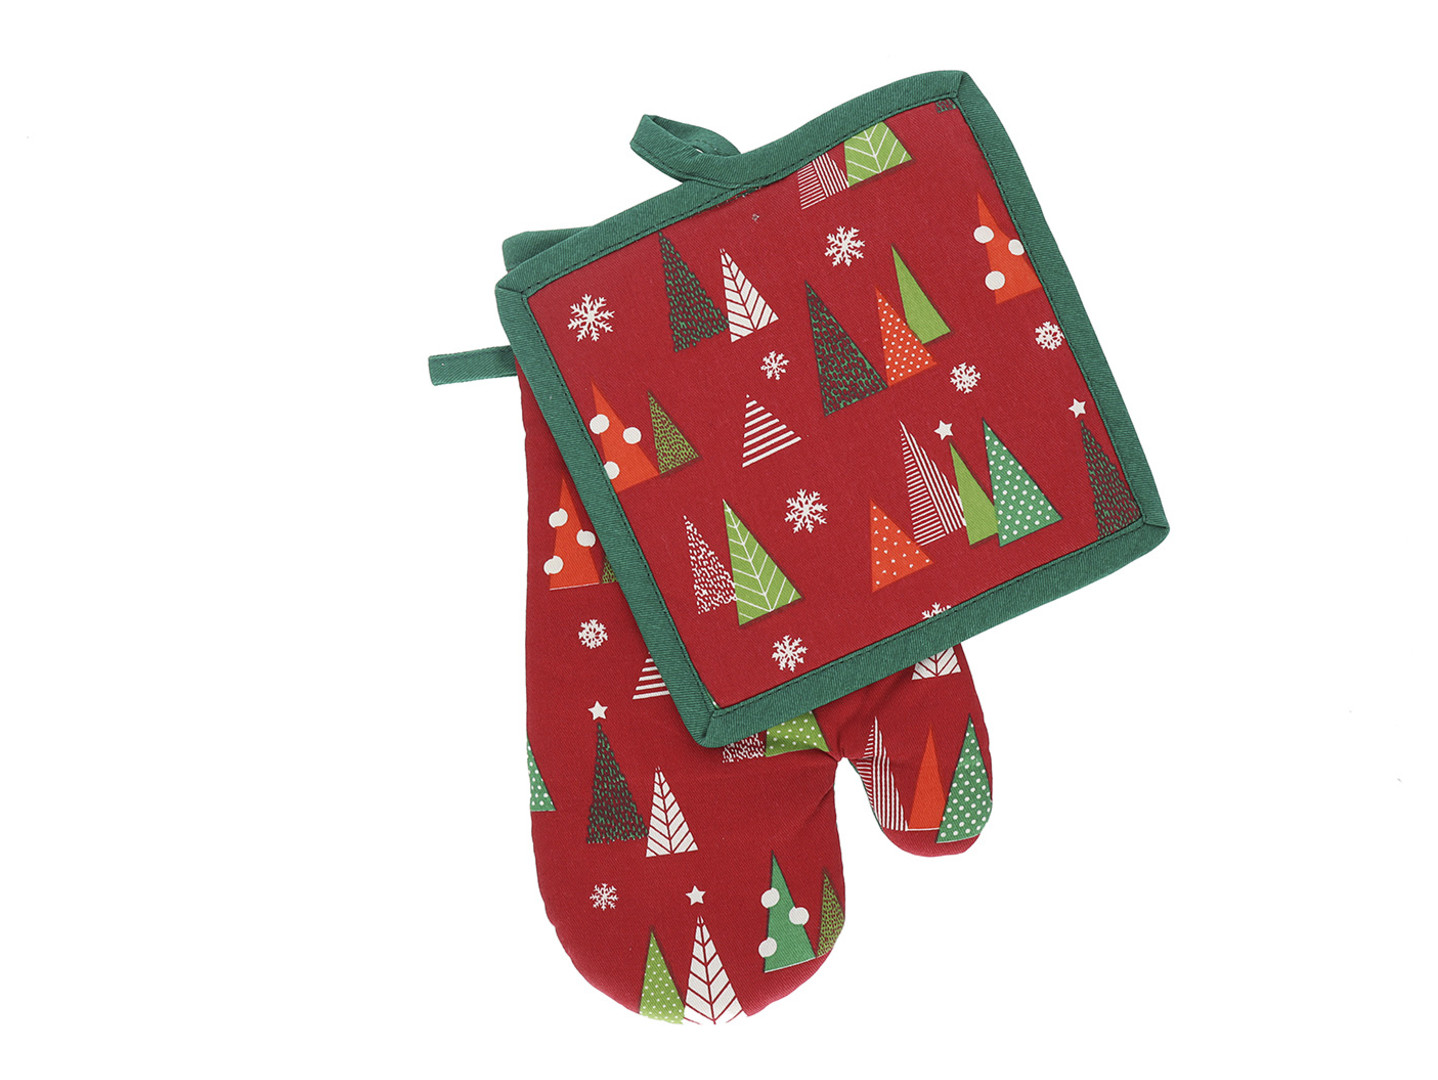 Vánoční kuchyňský set vánoční rukavice/chňapka HOLY TREE 19x30 cm/20X20 cm 100% bavlna Balení 2 kusy - pravá rukavice + chňapka